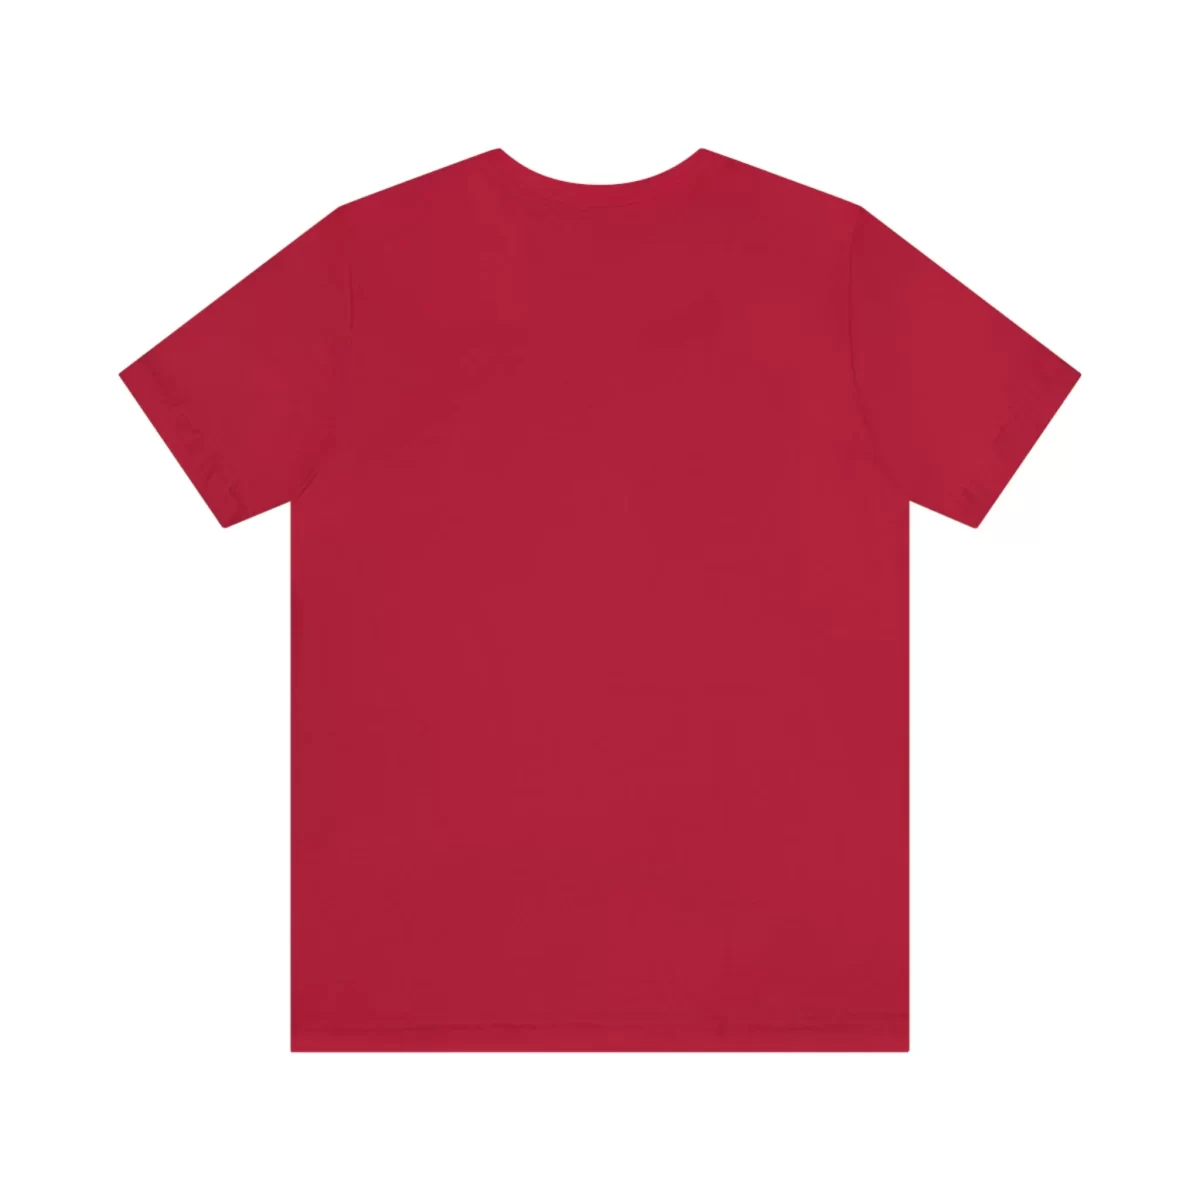 Unisex T Shirt Barcelona Red Back